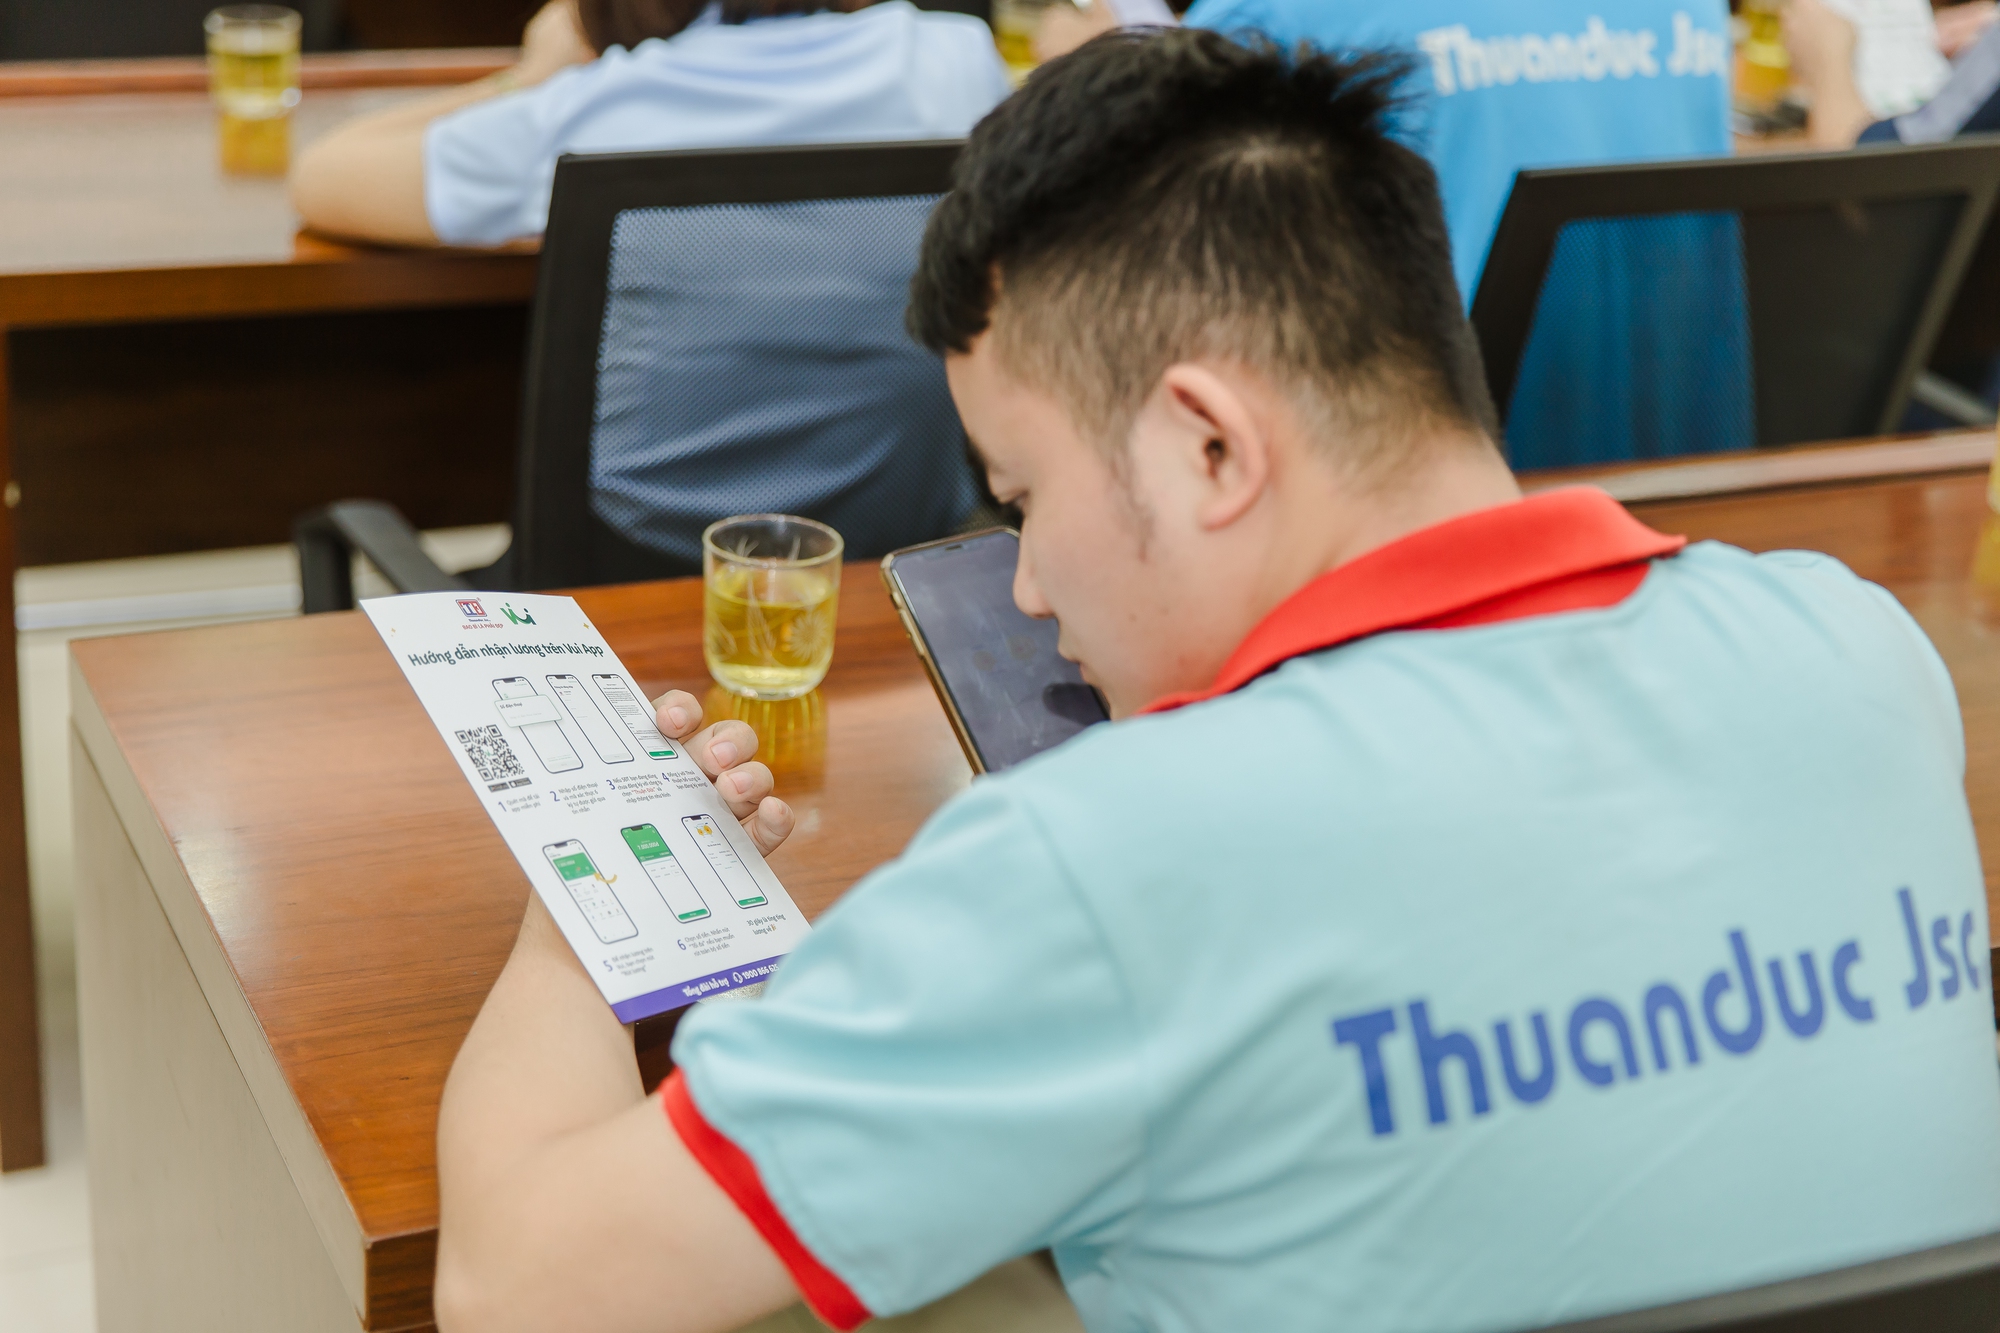 Bao Bì Thuận Đức bắt tay Vui App: Công nhân viên Hưng Yên đã được nhận lương linh hoạt - Ảnh 2.